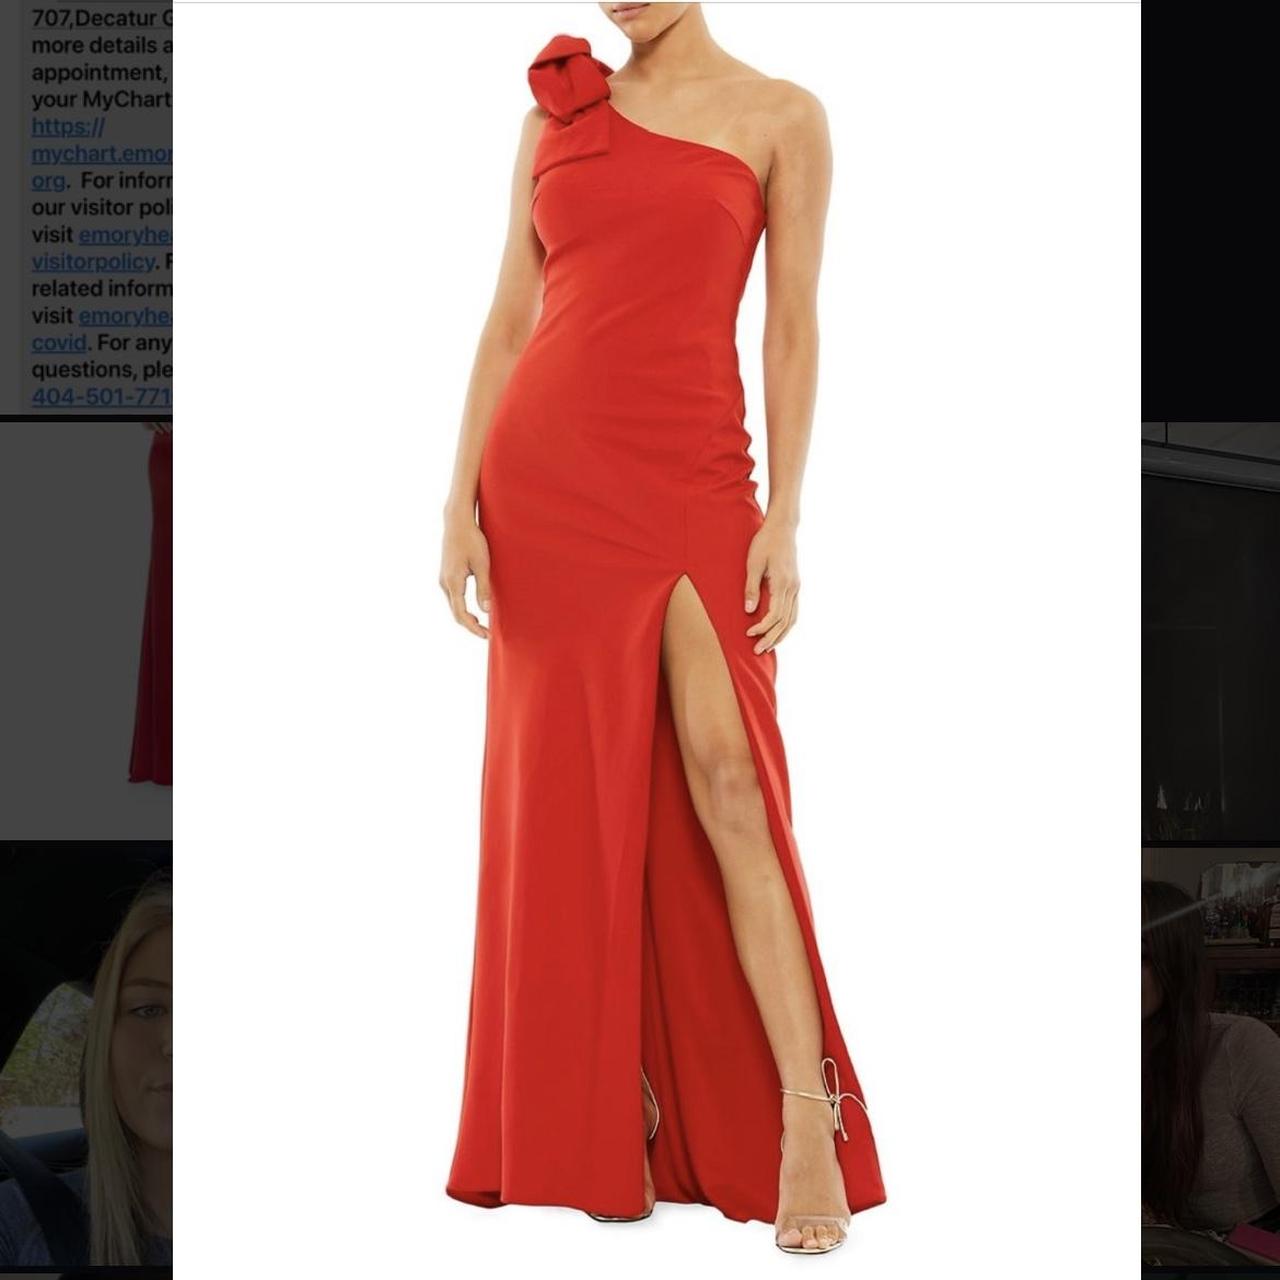 SAXX Women's Red Dress | Depop